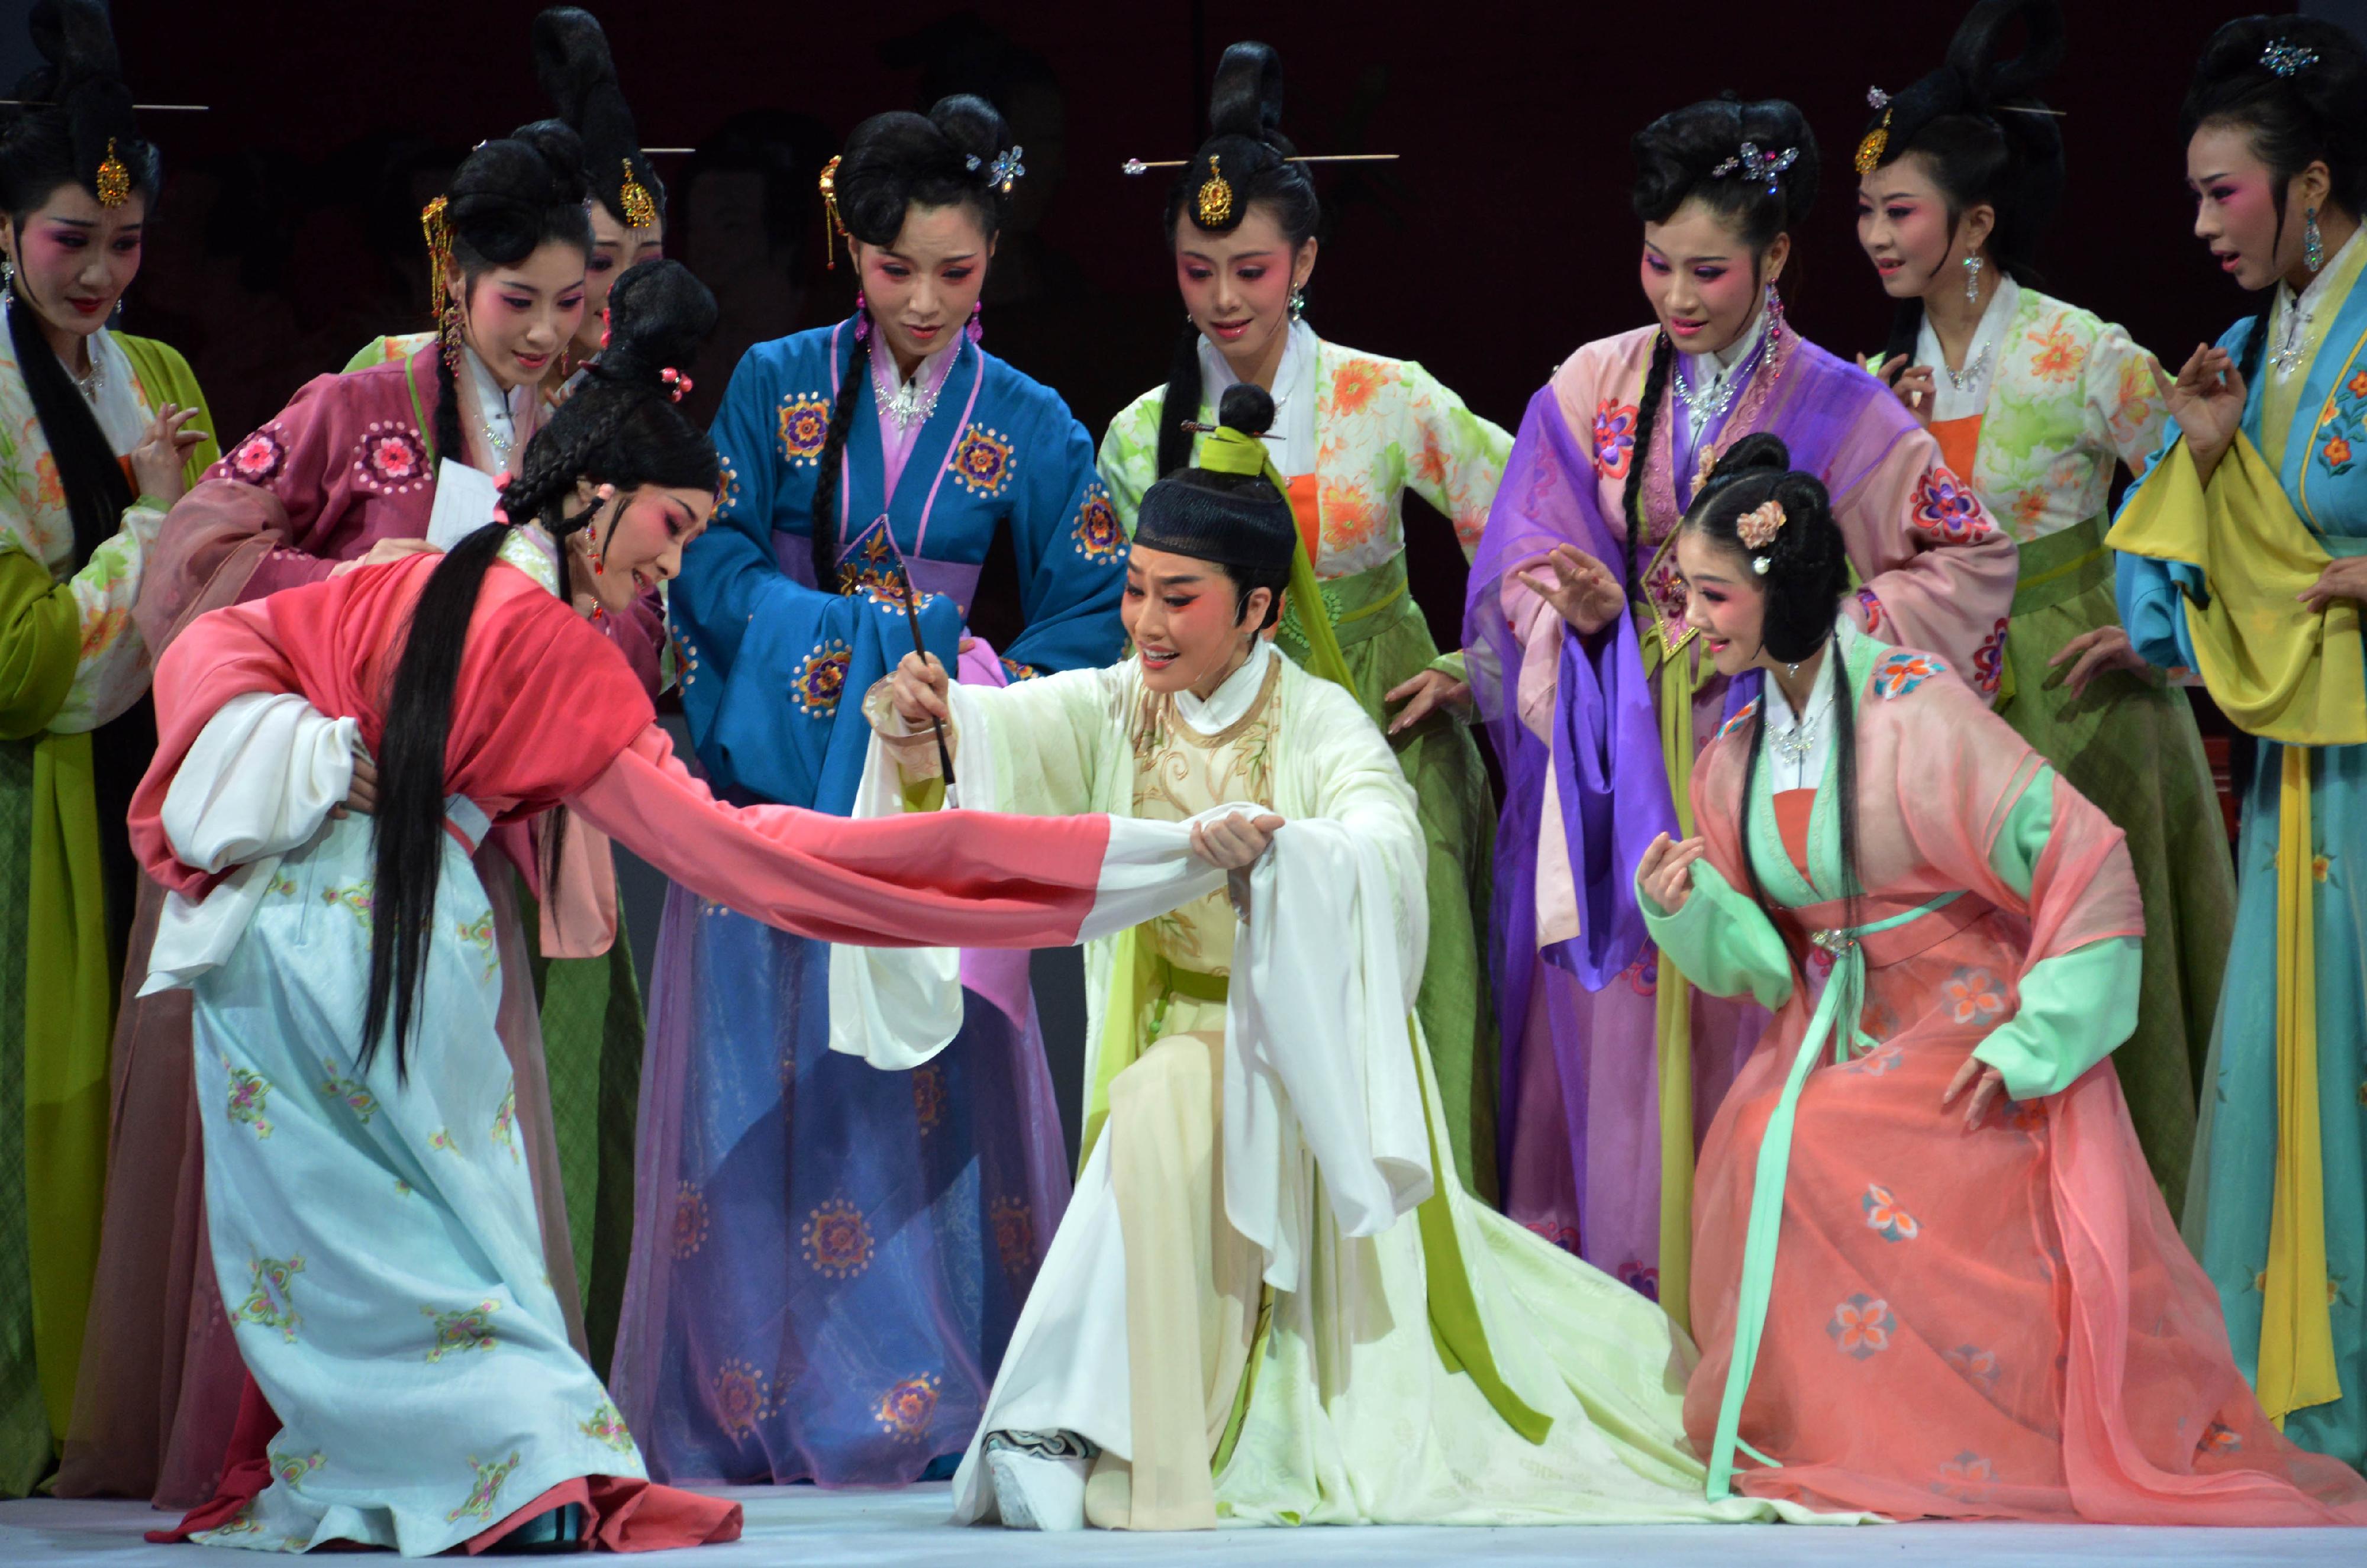 福建芳华越剧院于首届「中华文化节」上演三场越剧。图示《柳永》剧照。

